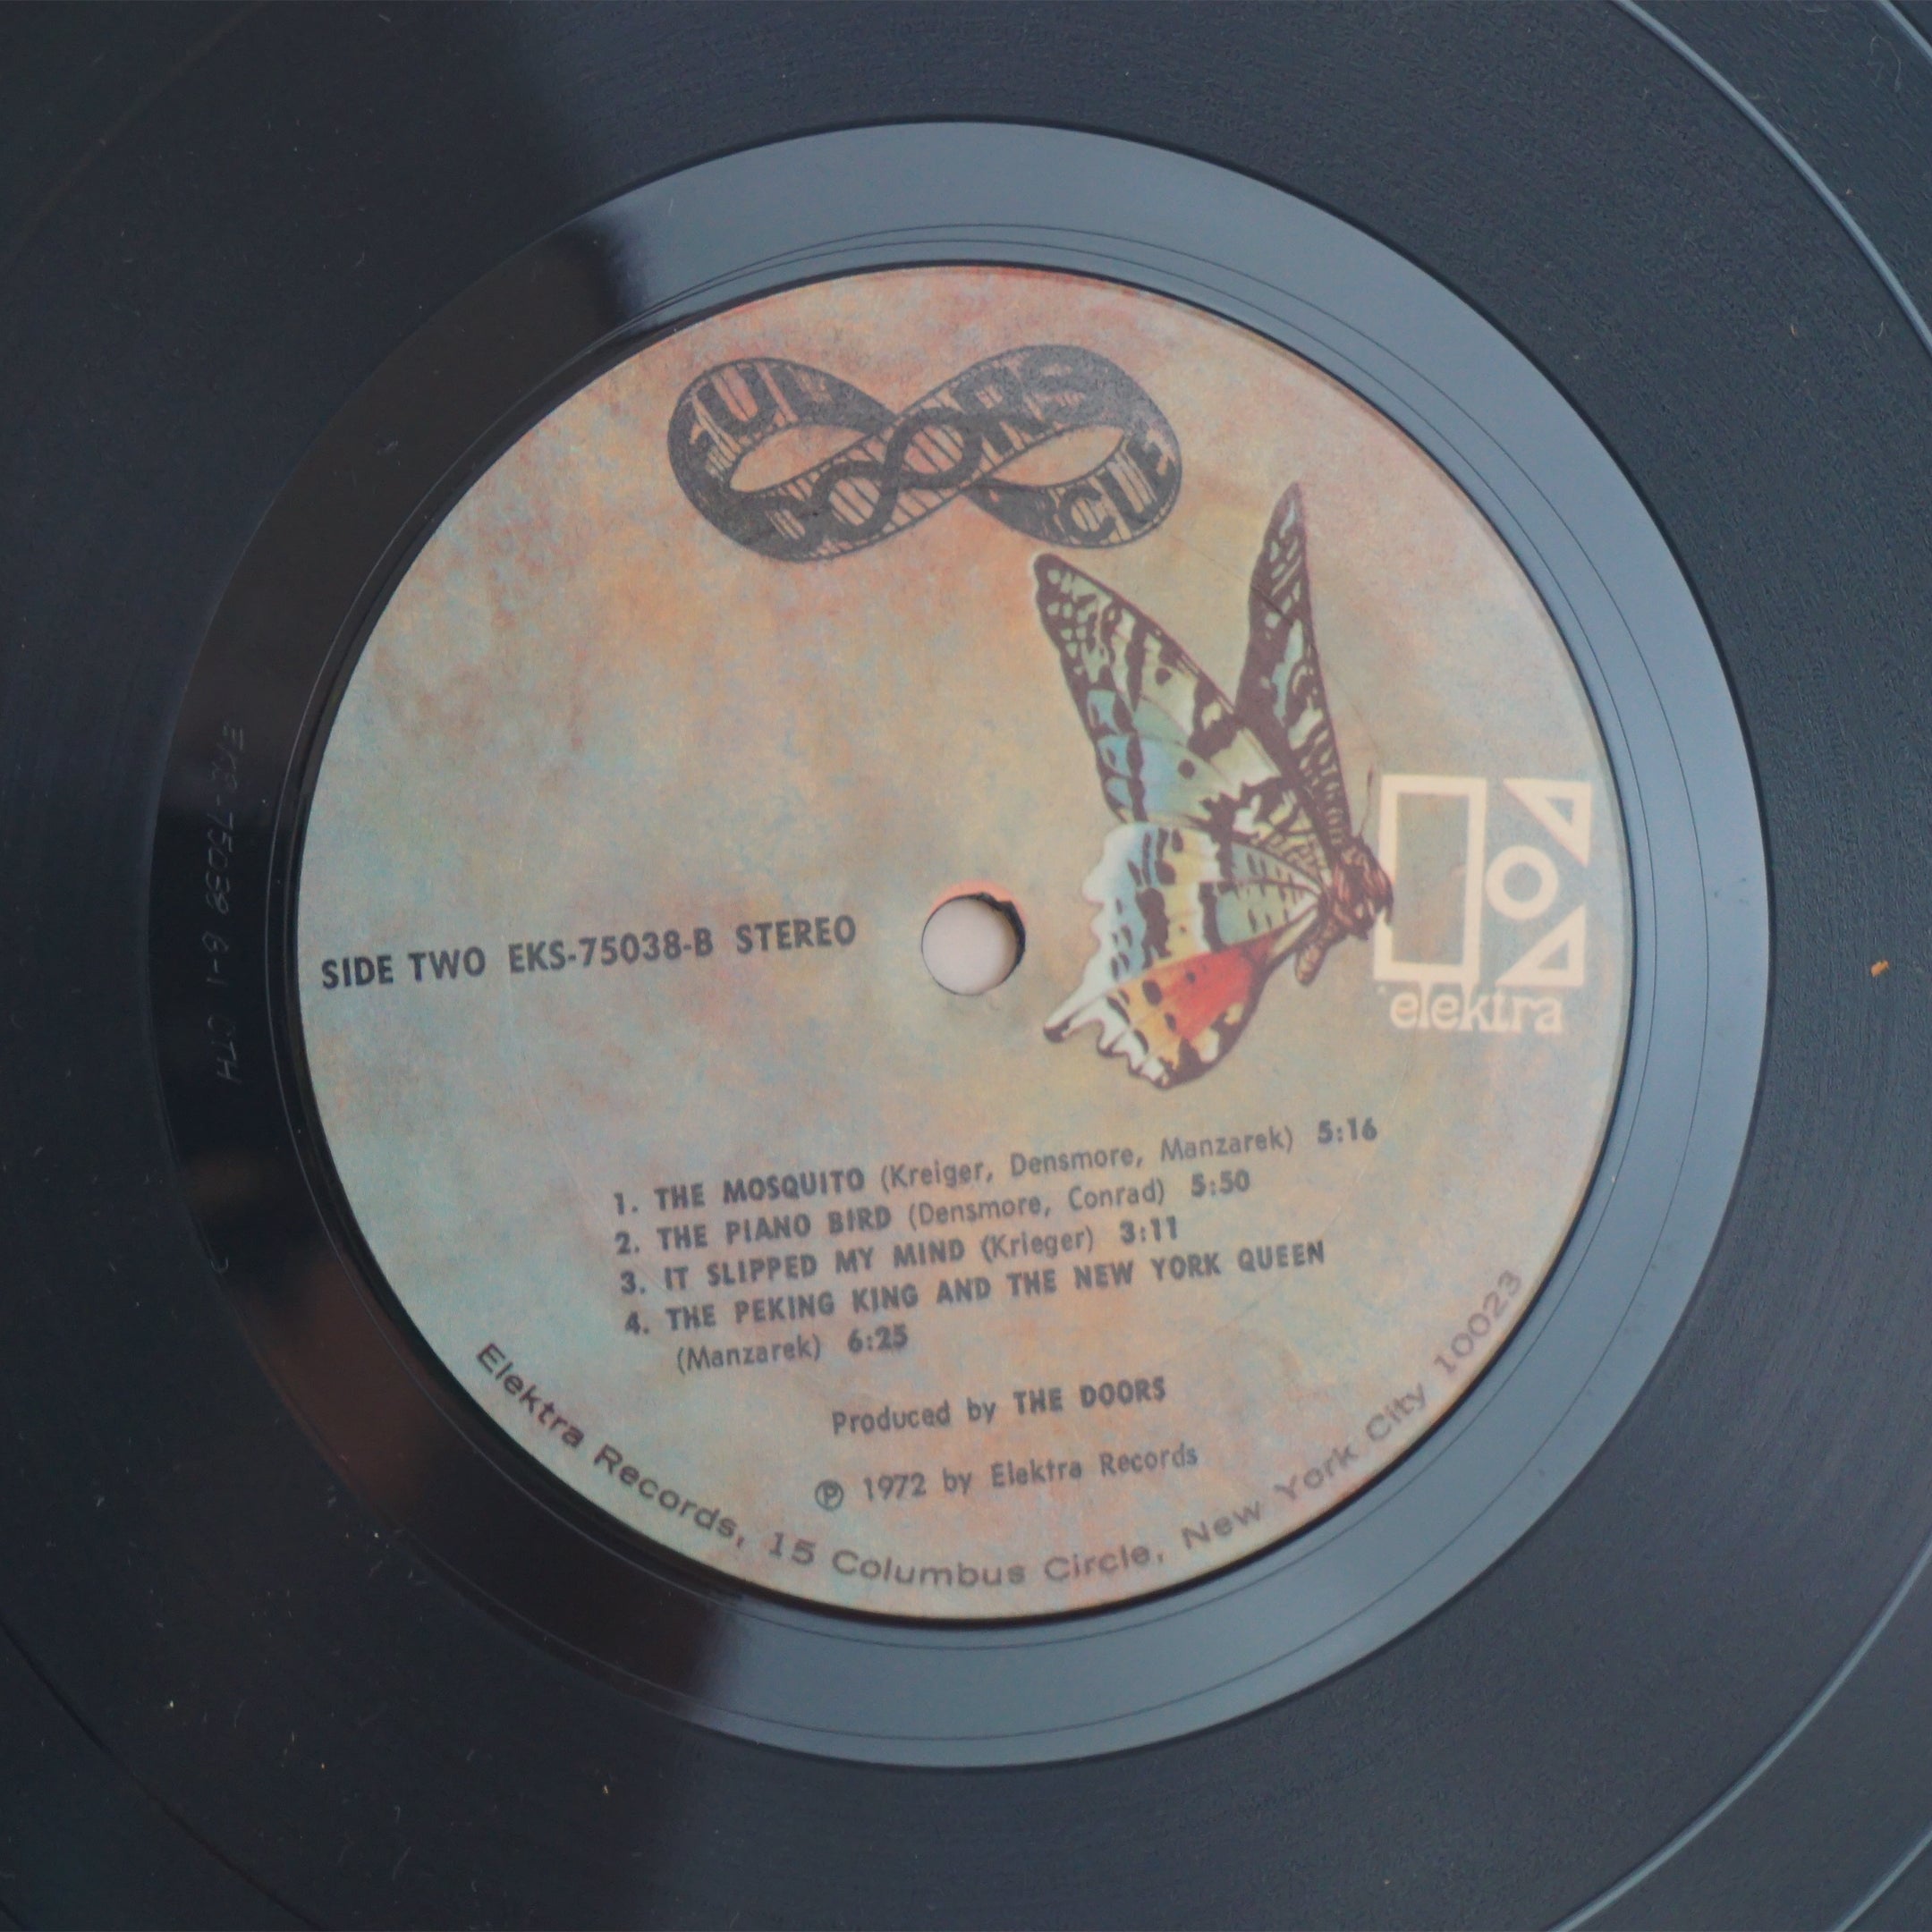 1972 Vintage E Elektra Records THE DOORS "Full Circle" Vinyl LP Record. EKS-75038